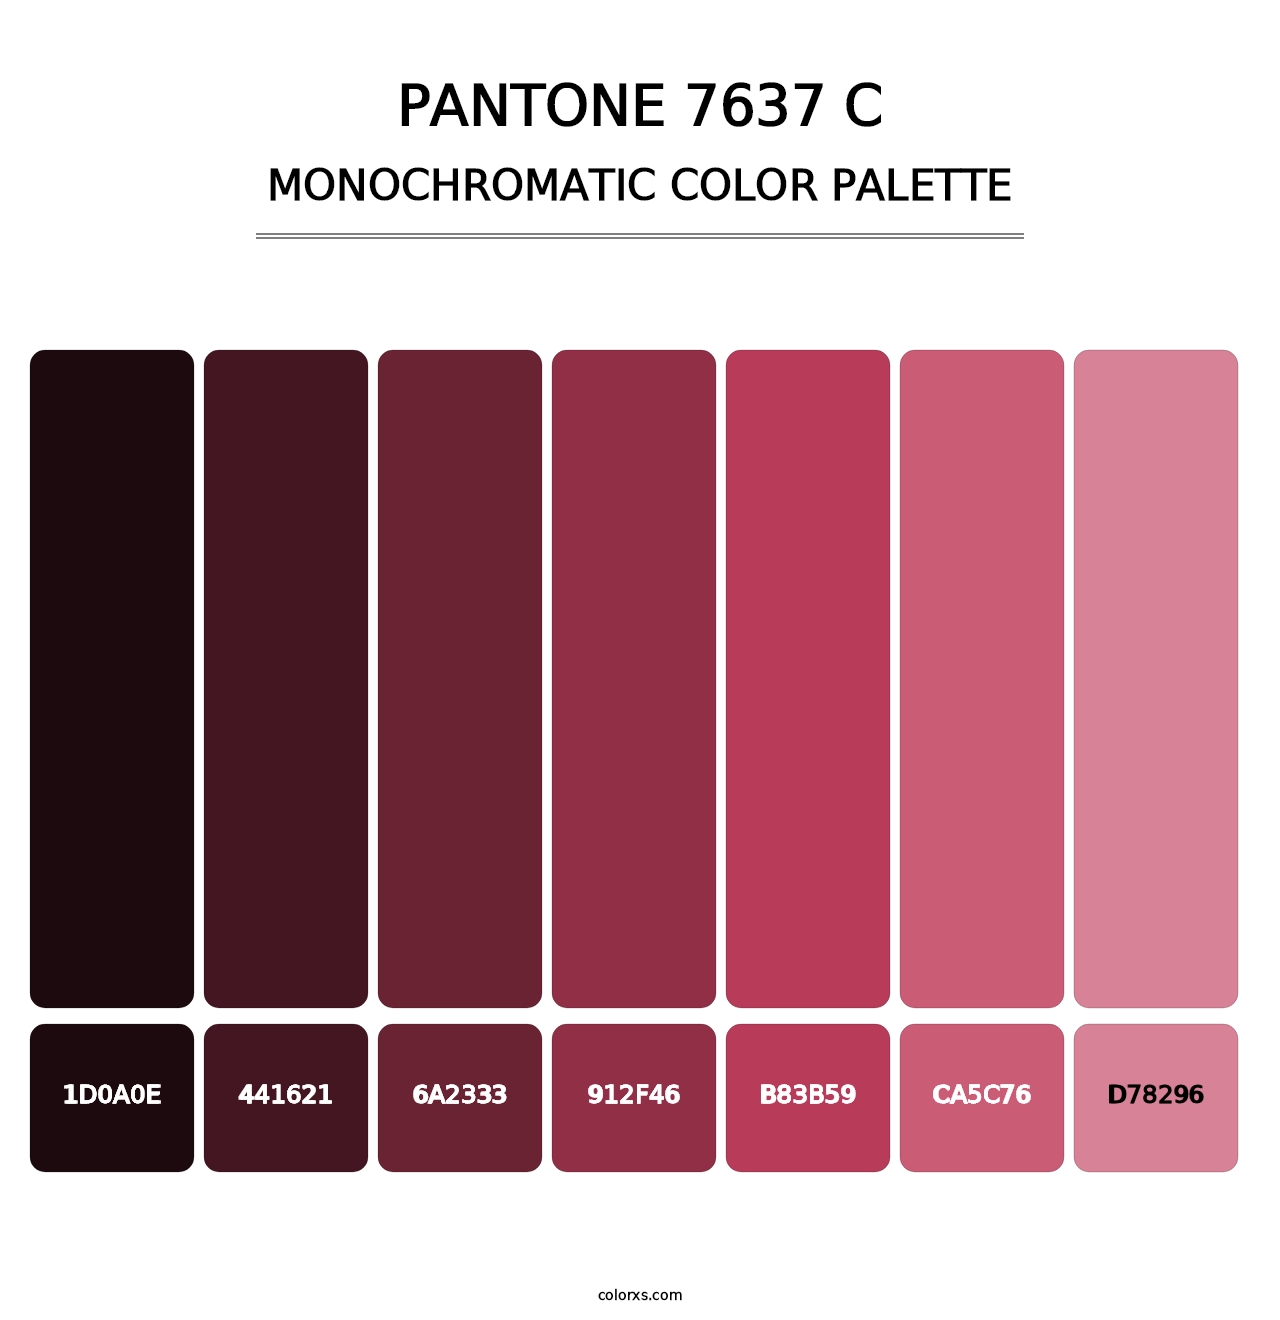 PANTONE 7637 C - Monochromatic Color Palette